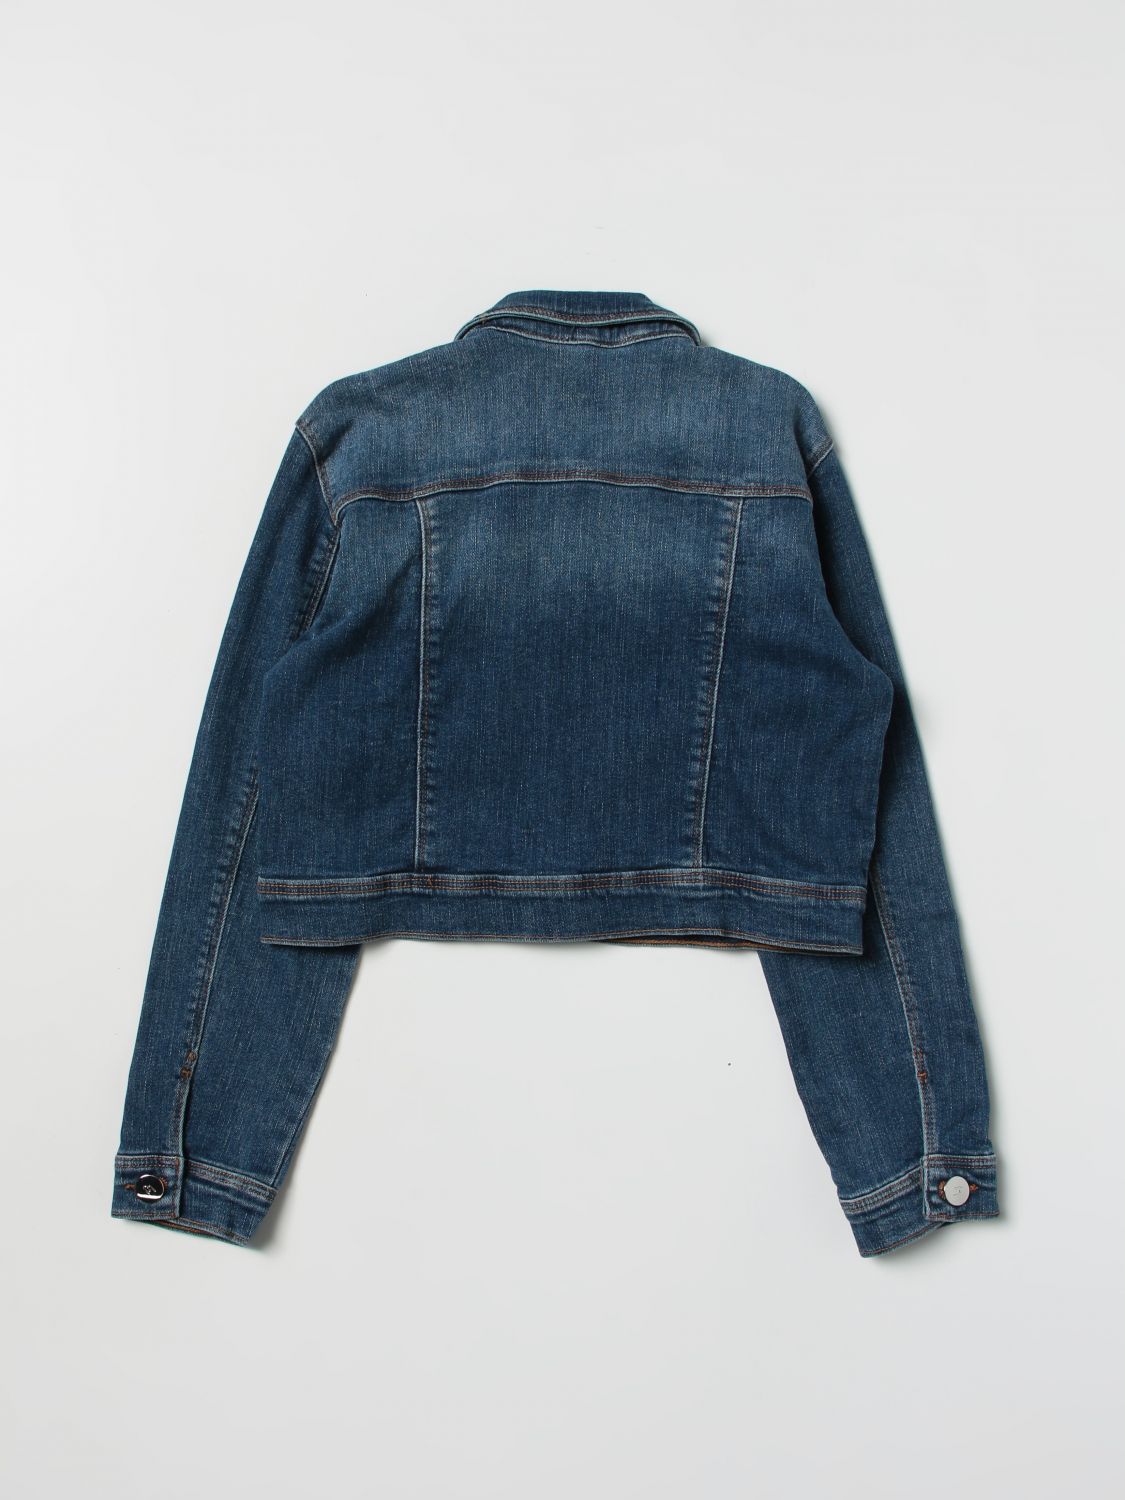 LIU JO KIDS: jacket for girls - Denim | Liu Jo Kids jacket GA3011D3246 ...